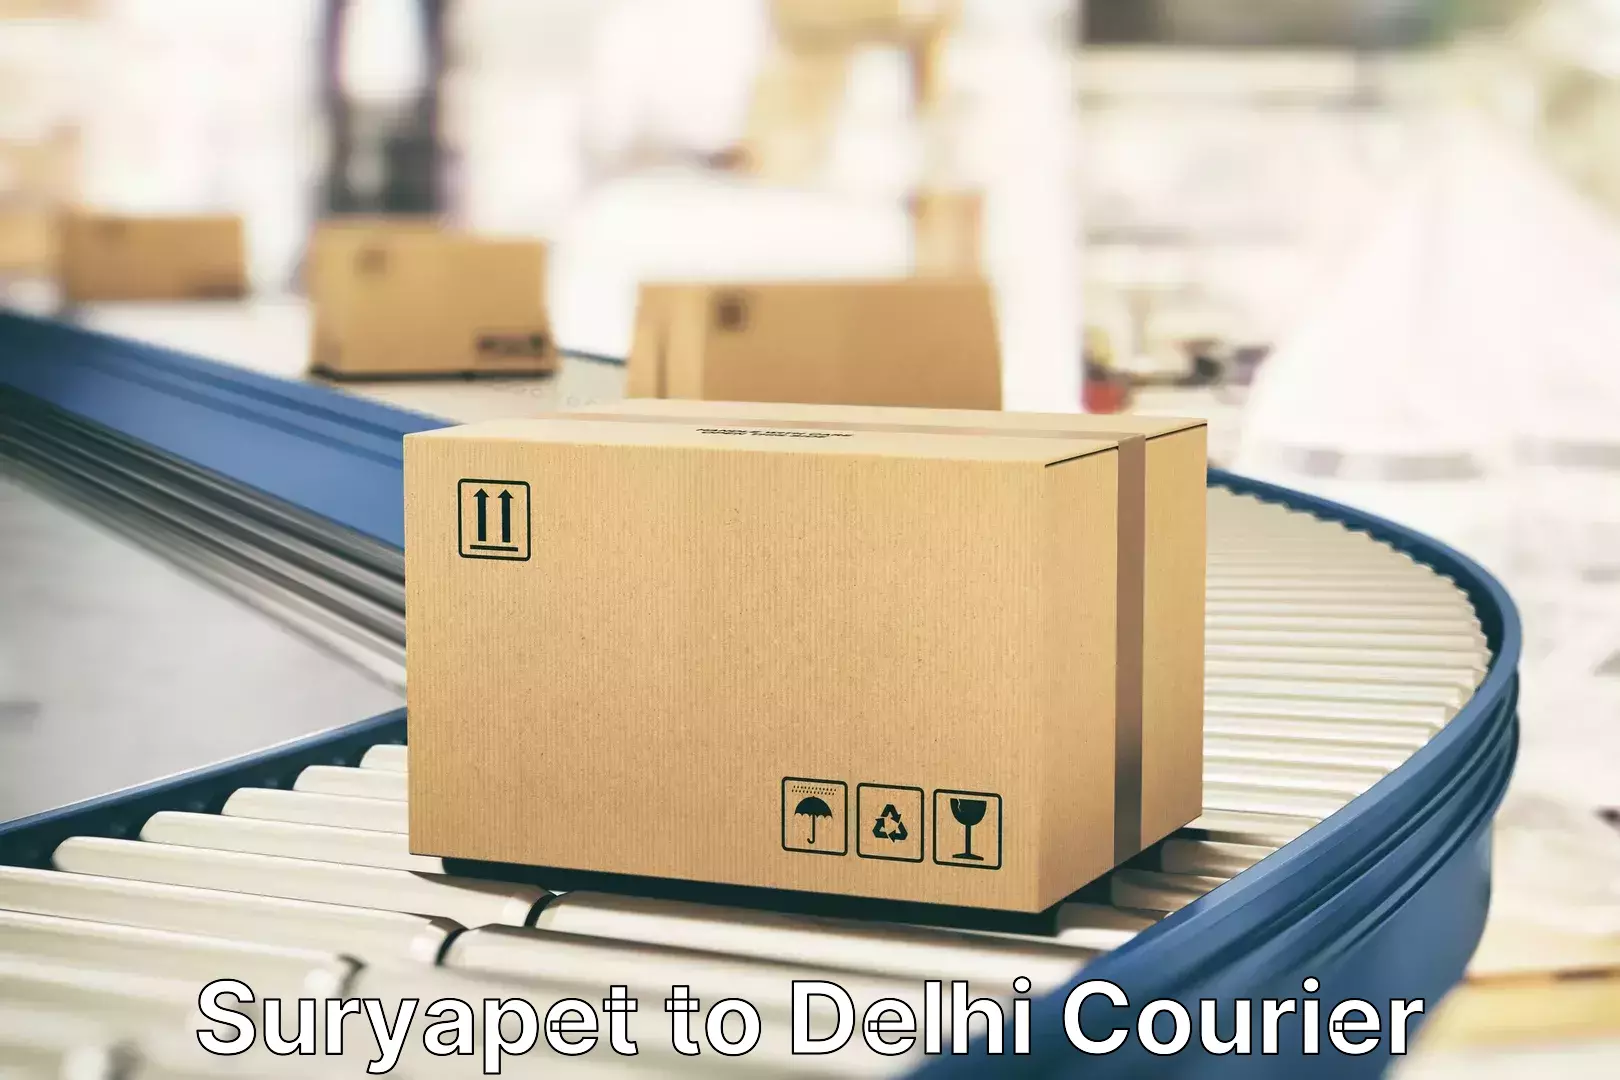 Door-to-door baggage service Suryapet to Delhi